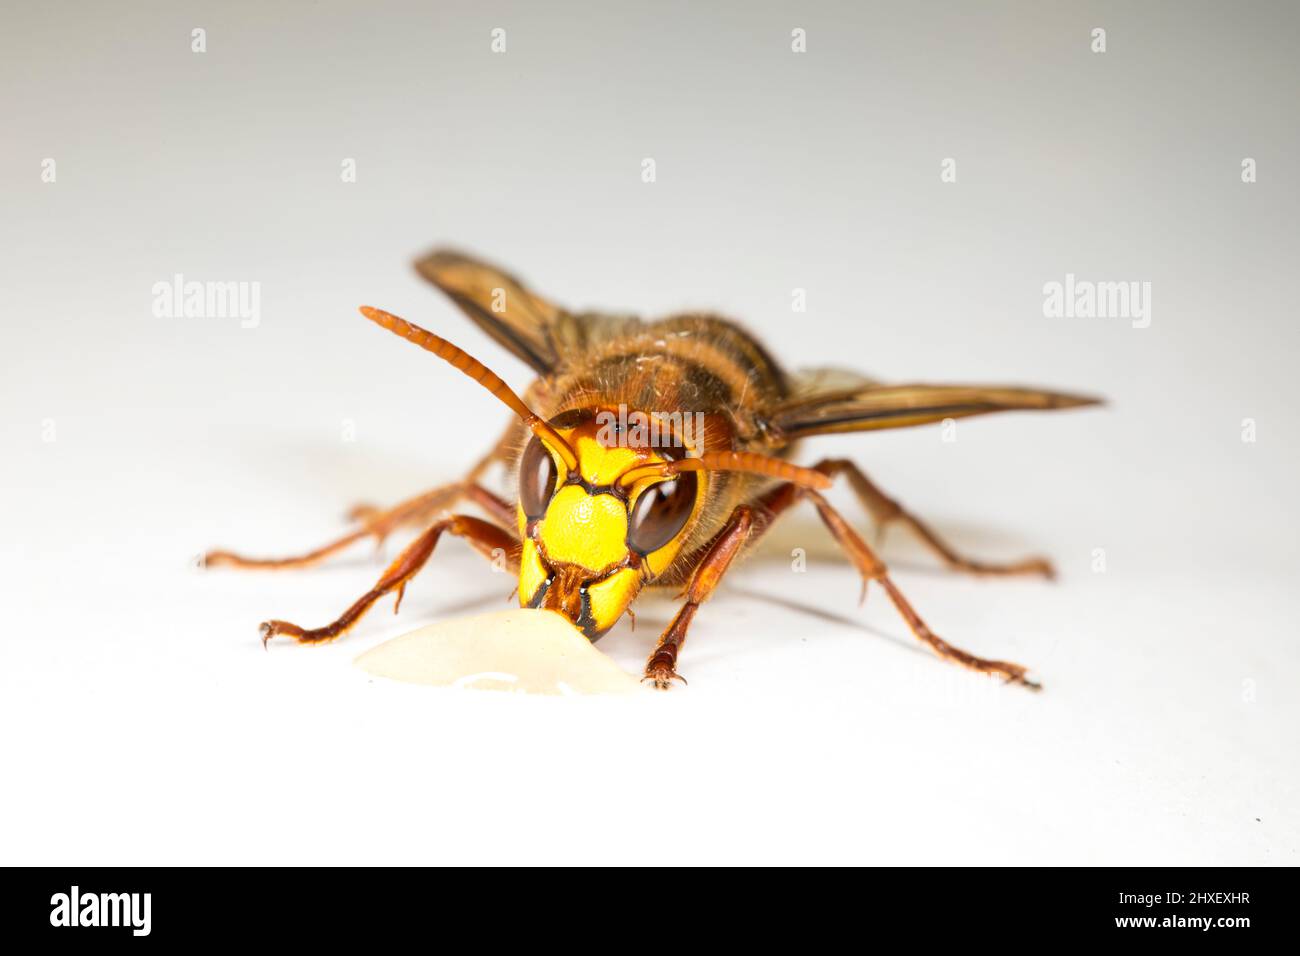 European Hornet (Vespa crabro) travailleur adulte photographié sur fond blanc. Powys, pays de Galles. Septembre. Banque D'Images